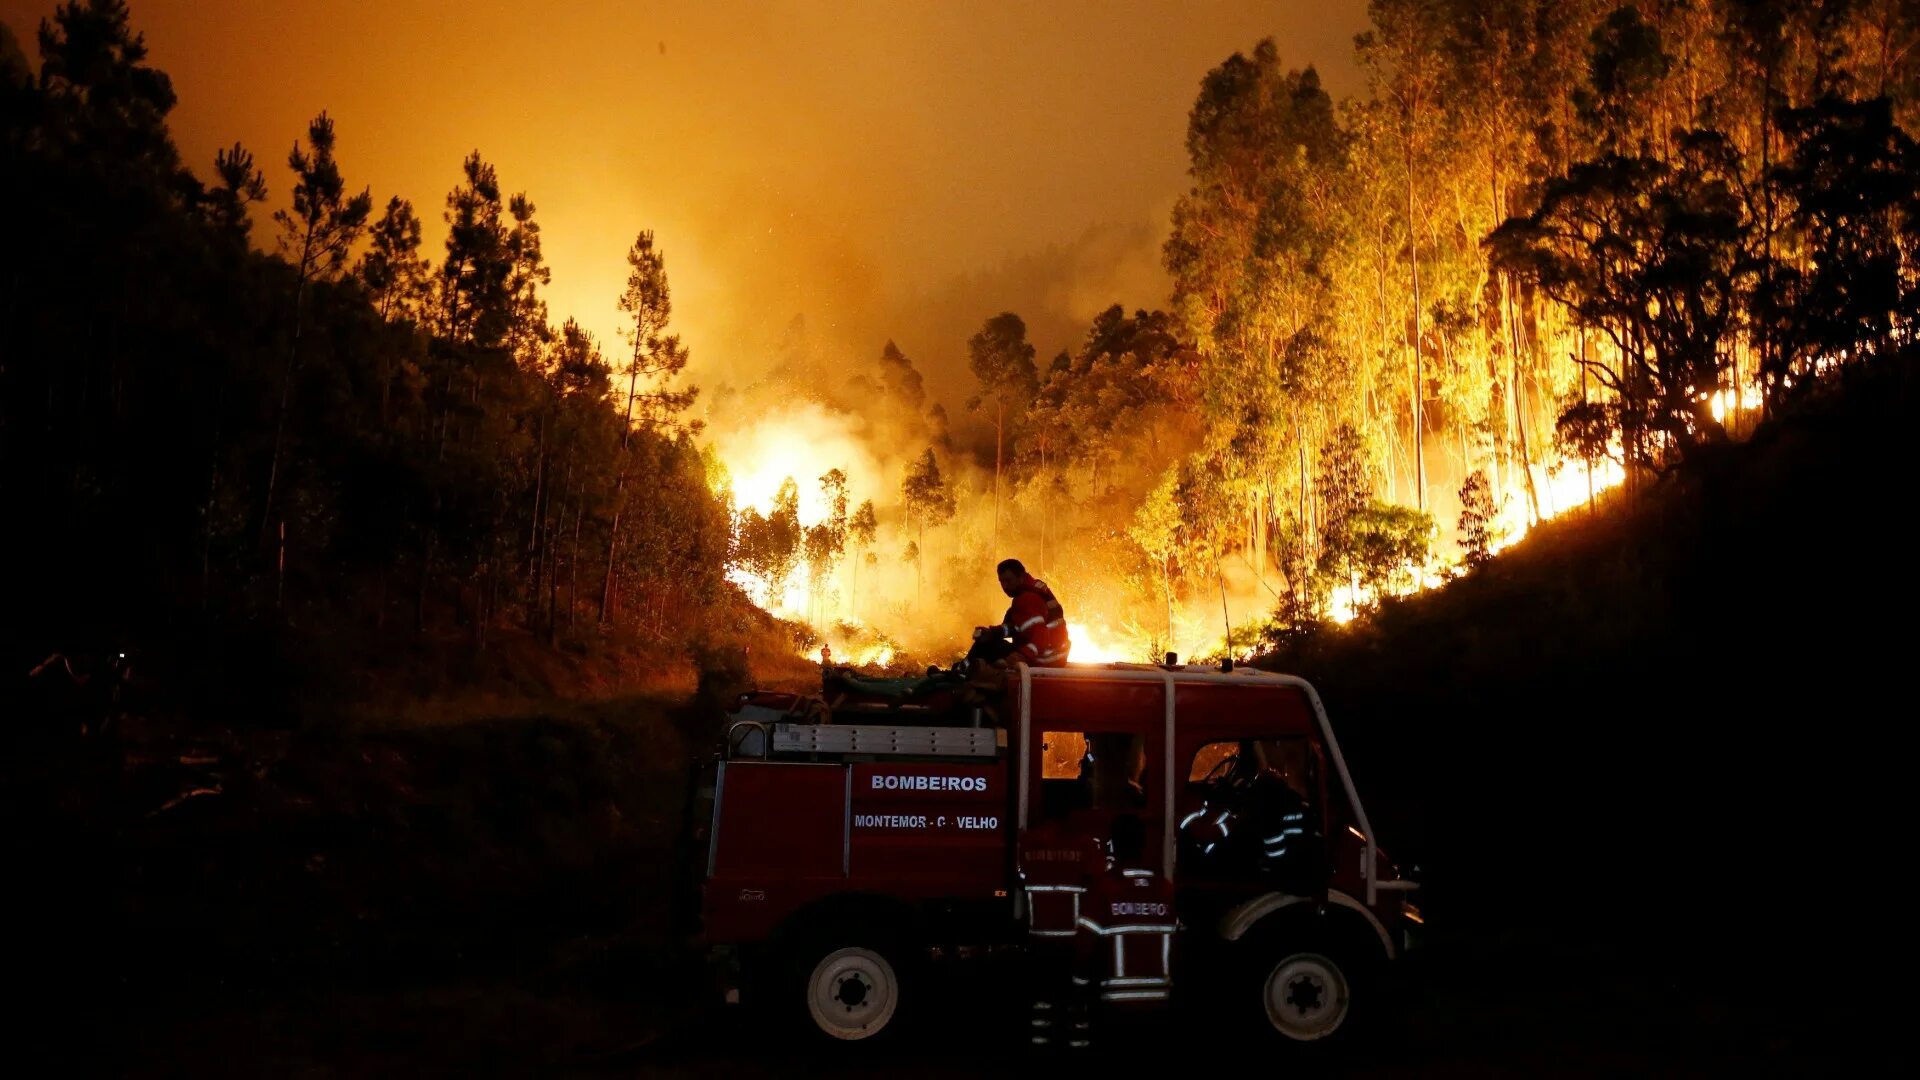 Пожары 2017 год. Пожар в Португалии 2017. Пожары в Португалии. Пожарная машина тушит лес. Португалия в огне.